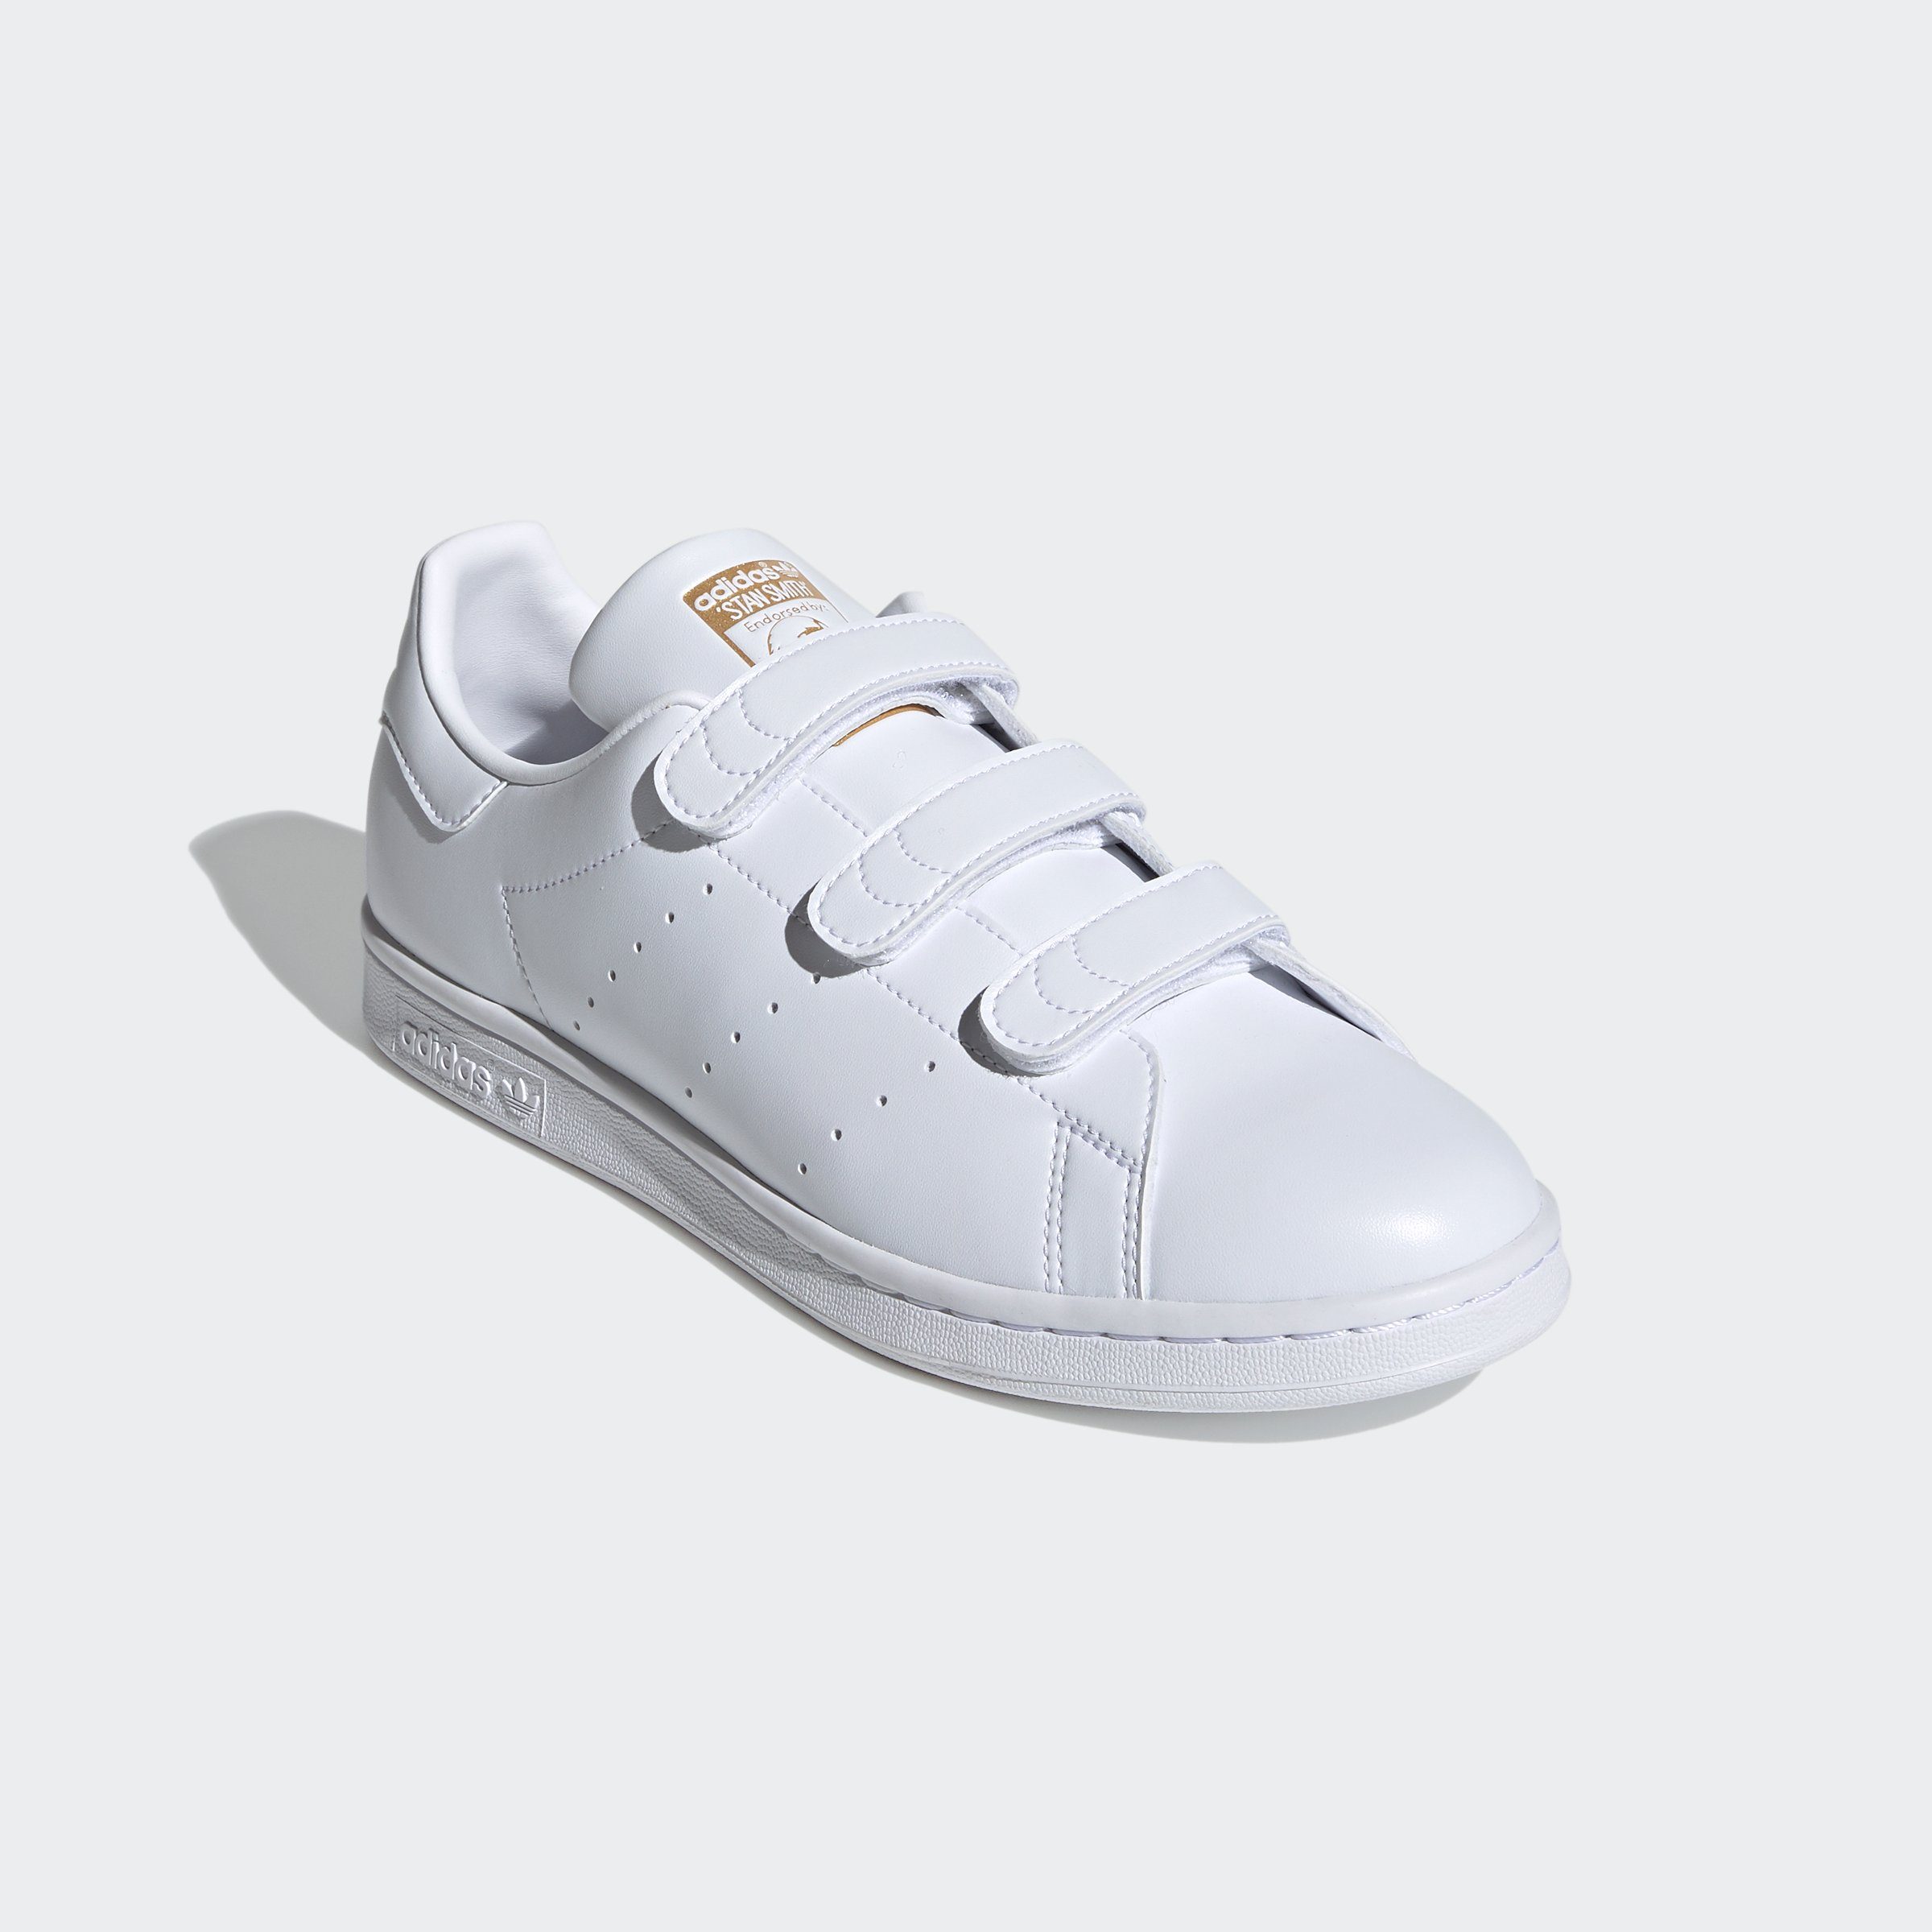 adidas Originals STAN SMITH Sneaker, Fällt klein aus, bitte eine Größe  größer bestellen